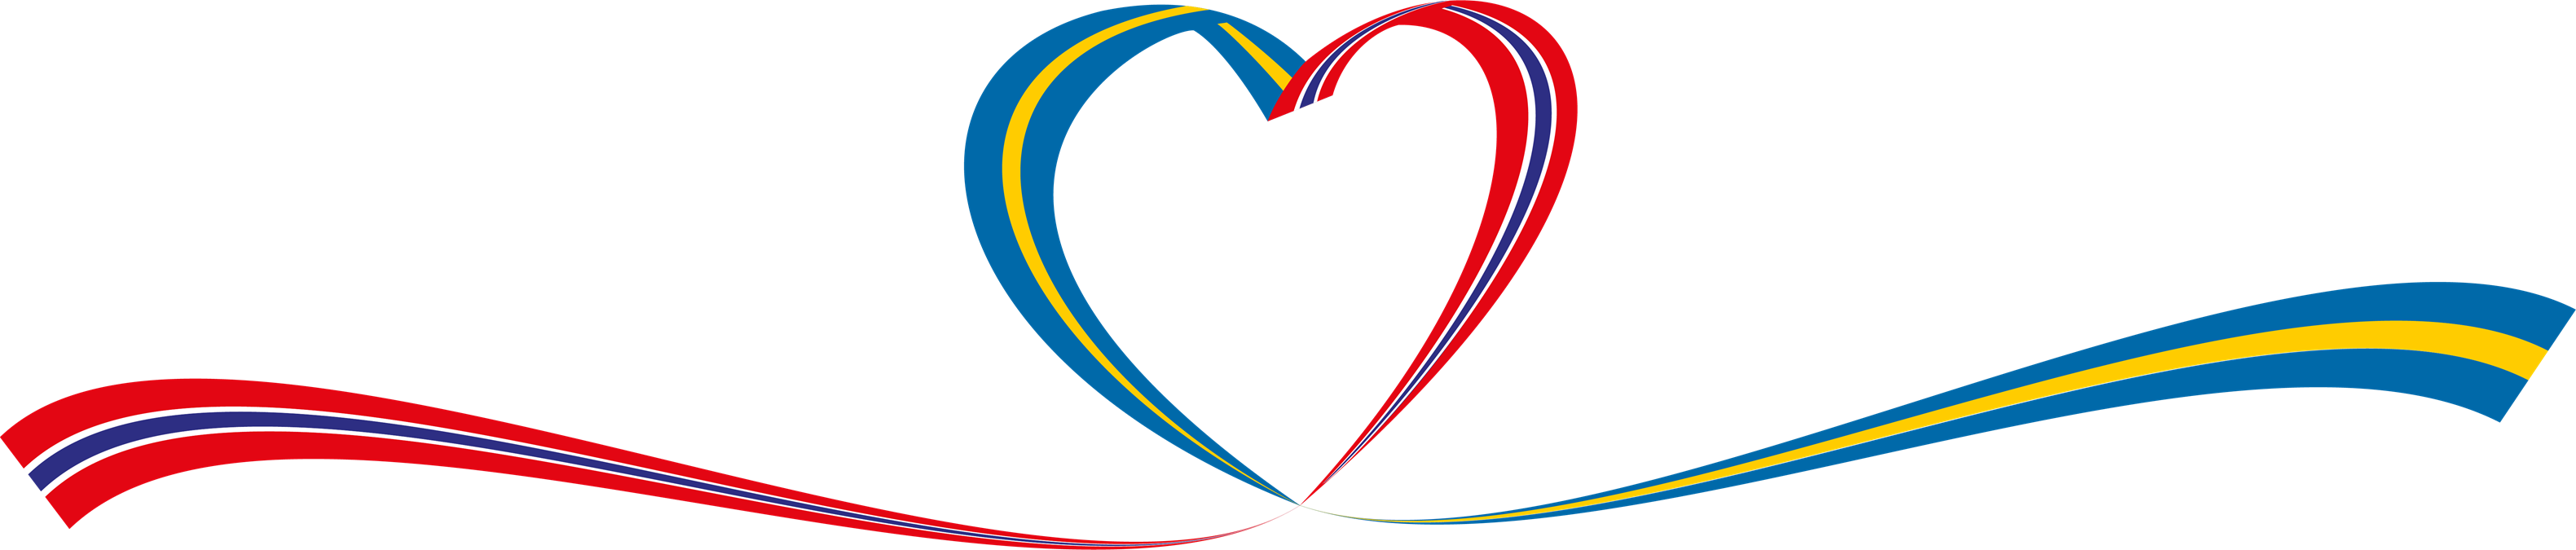 Svenska och norska flaggan möts i ett hjärta för att beskriva samverkan